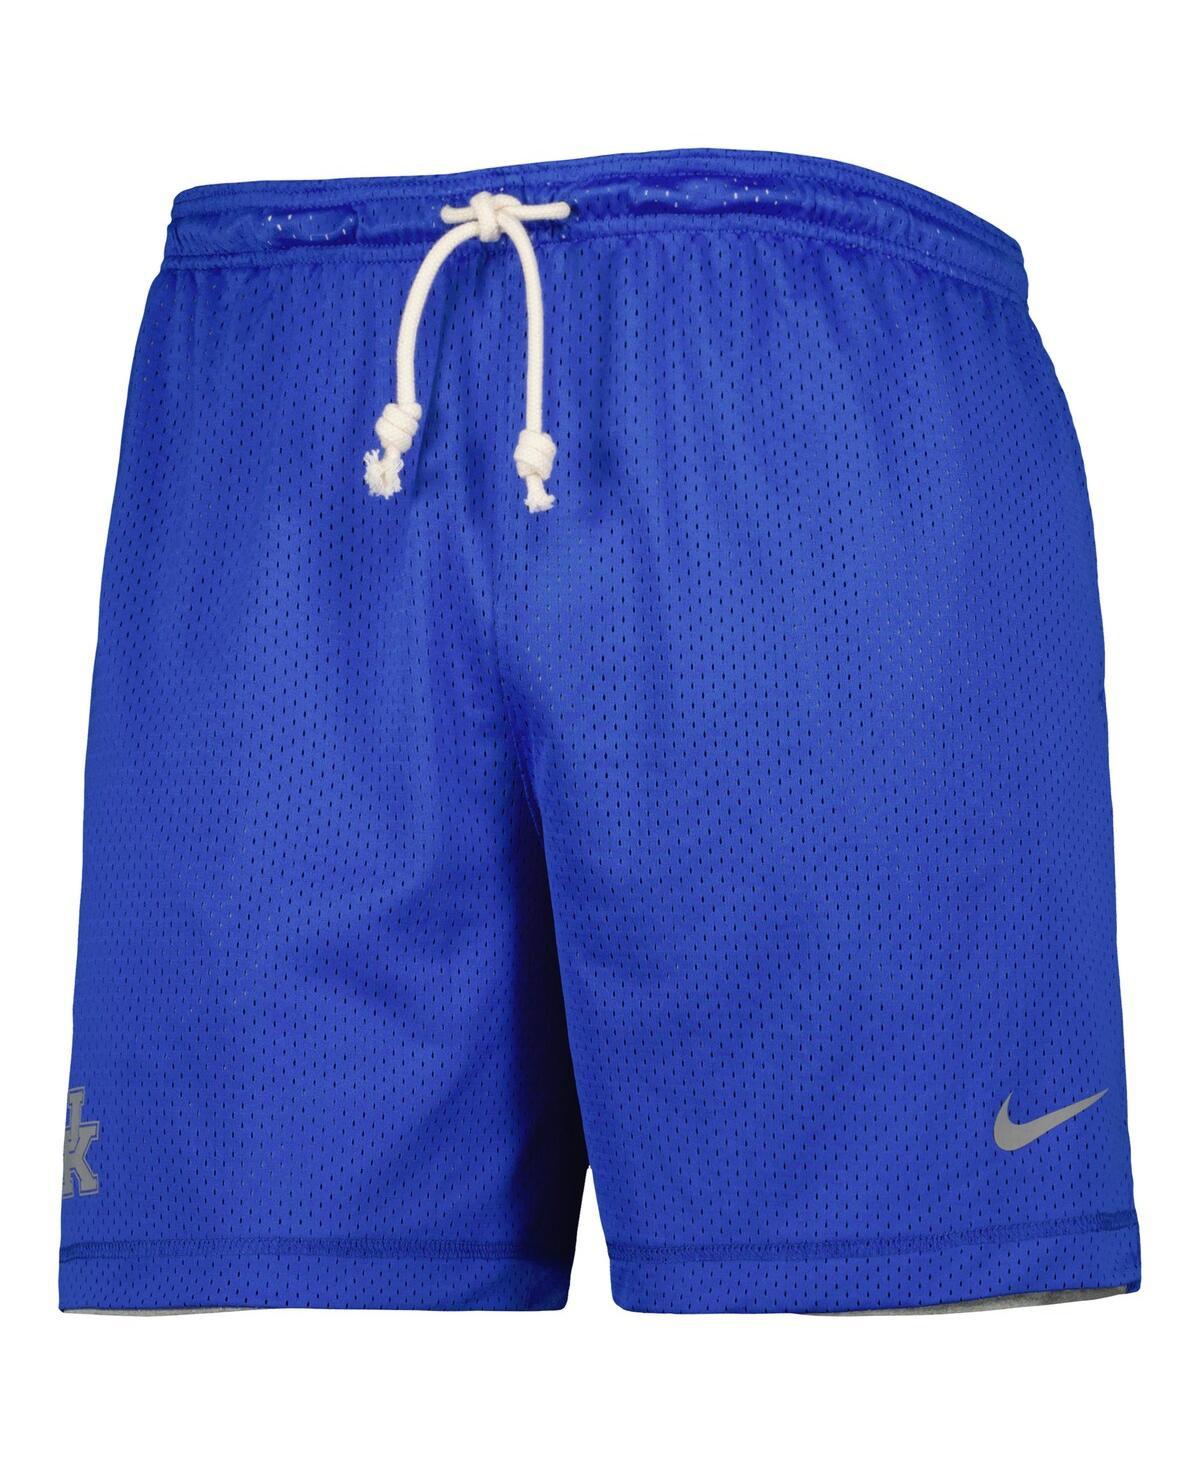 Men's Nike Aroldis Chapman White Kansas City Royals Home Replica Player Jersey, XL